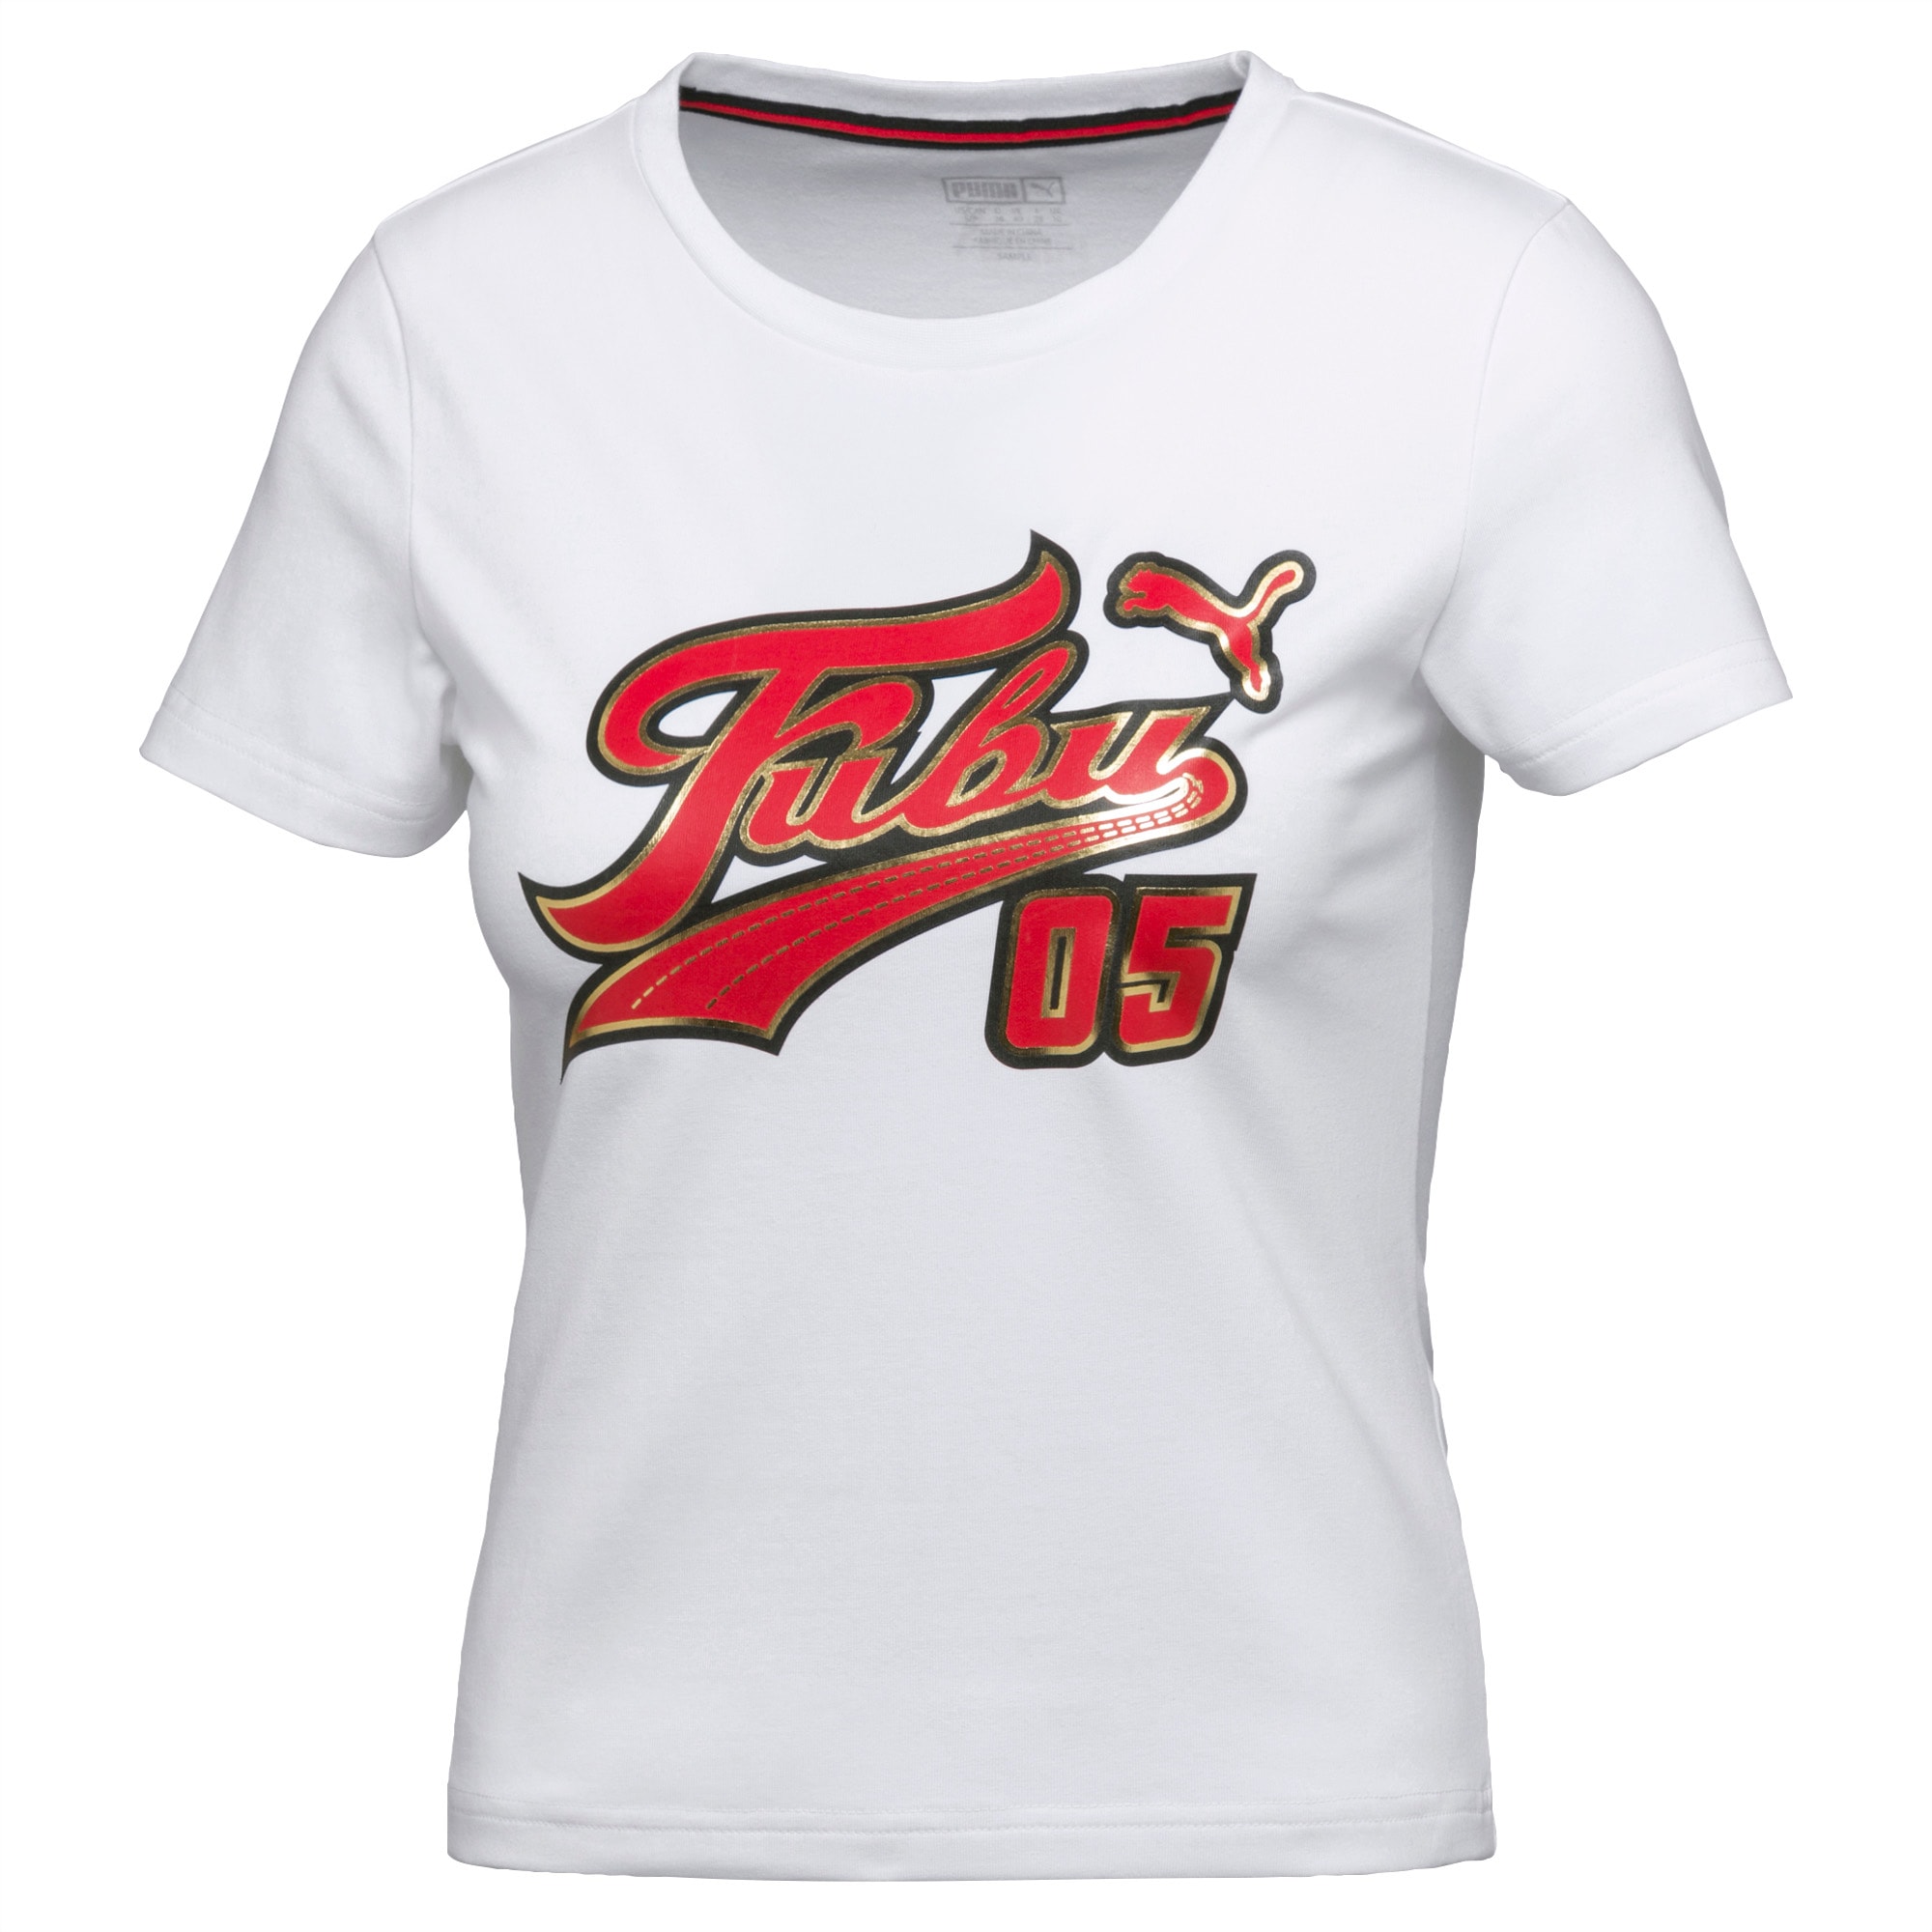 Fubu Shirts Logo - fubu shirt roblox